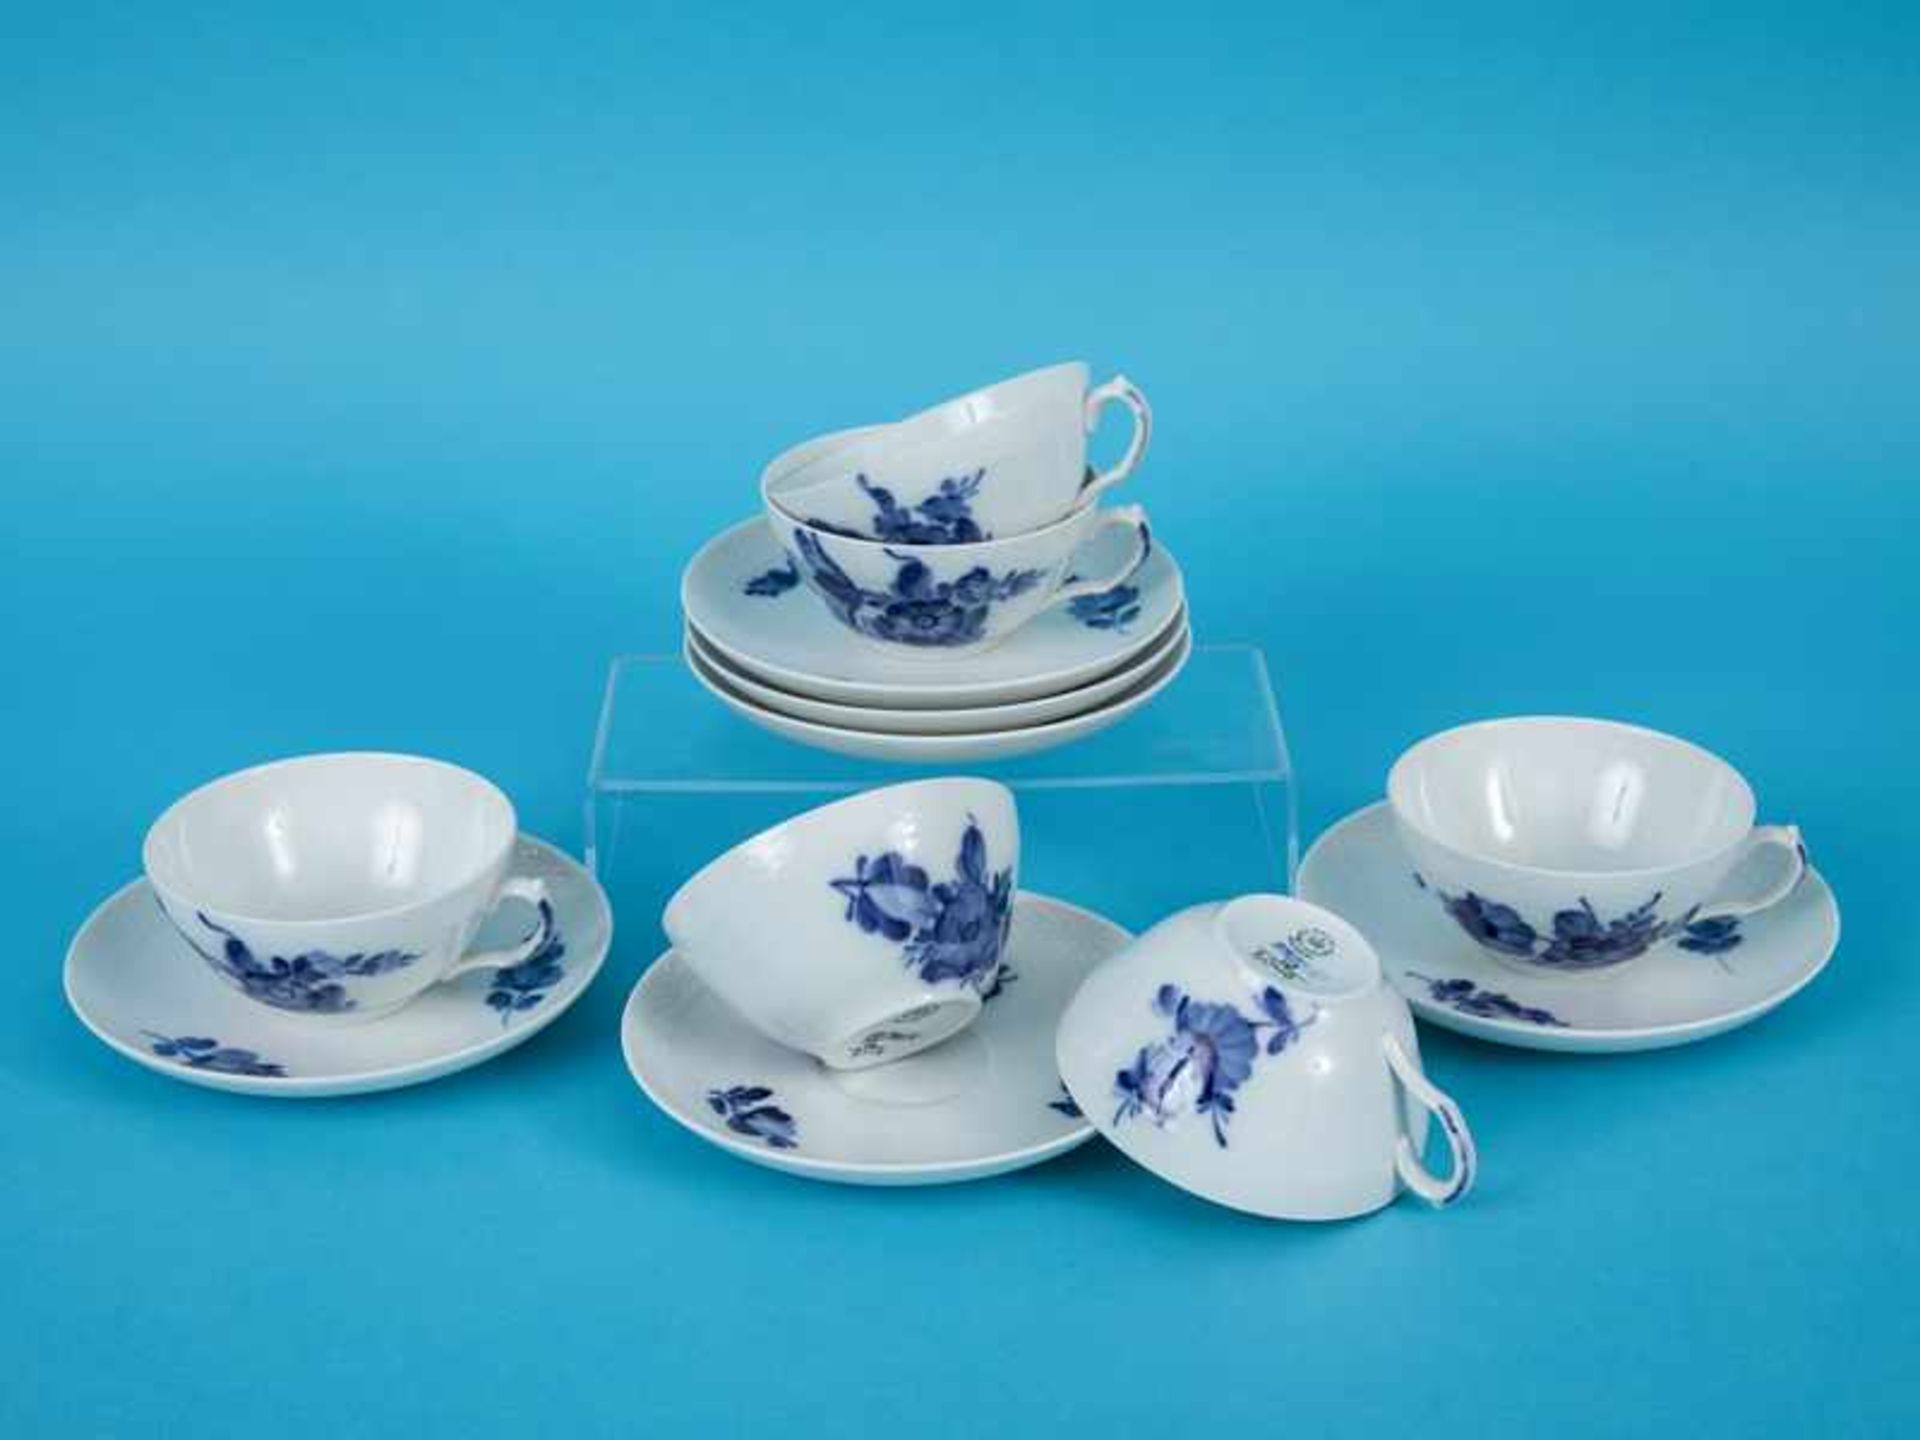 6 Teetassen "Blaue Blume", Royal Copenhagen, 20. Jh. Weißporzellan mit unter Glasur blauem